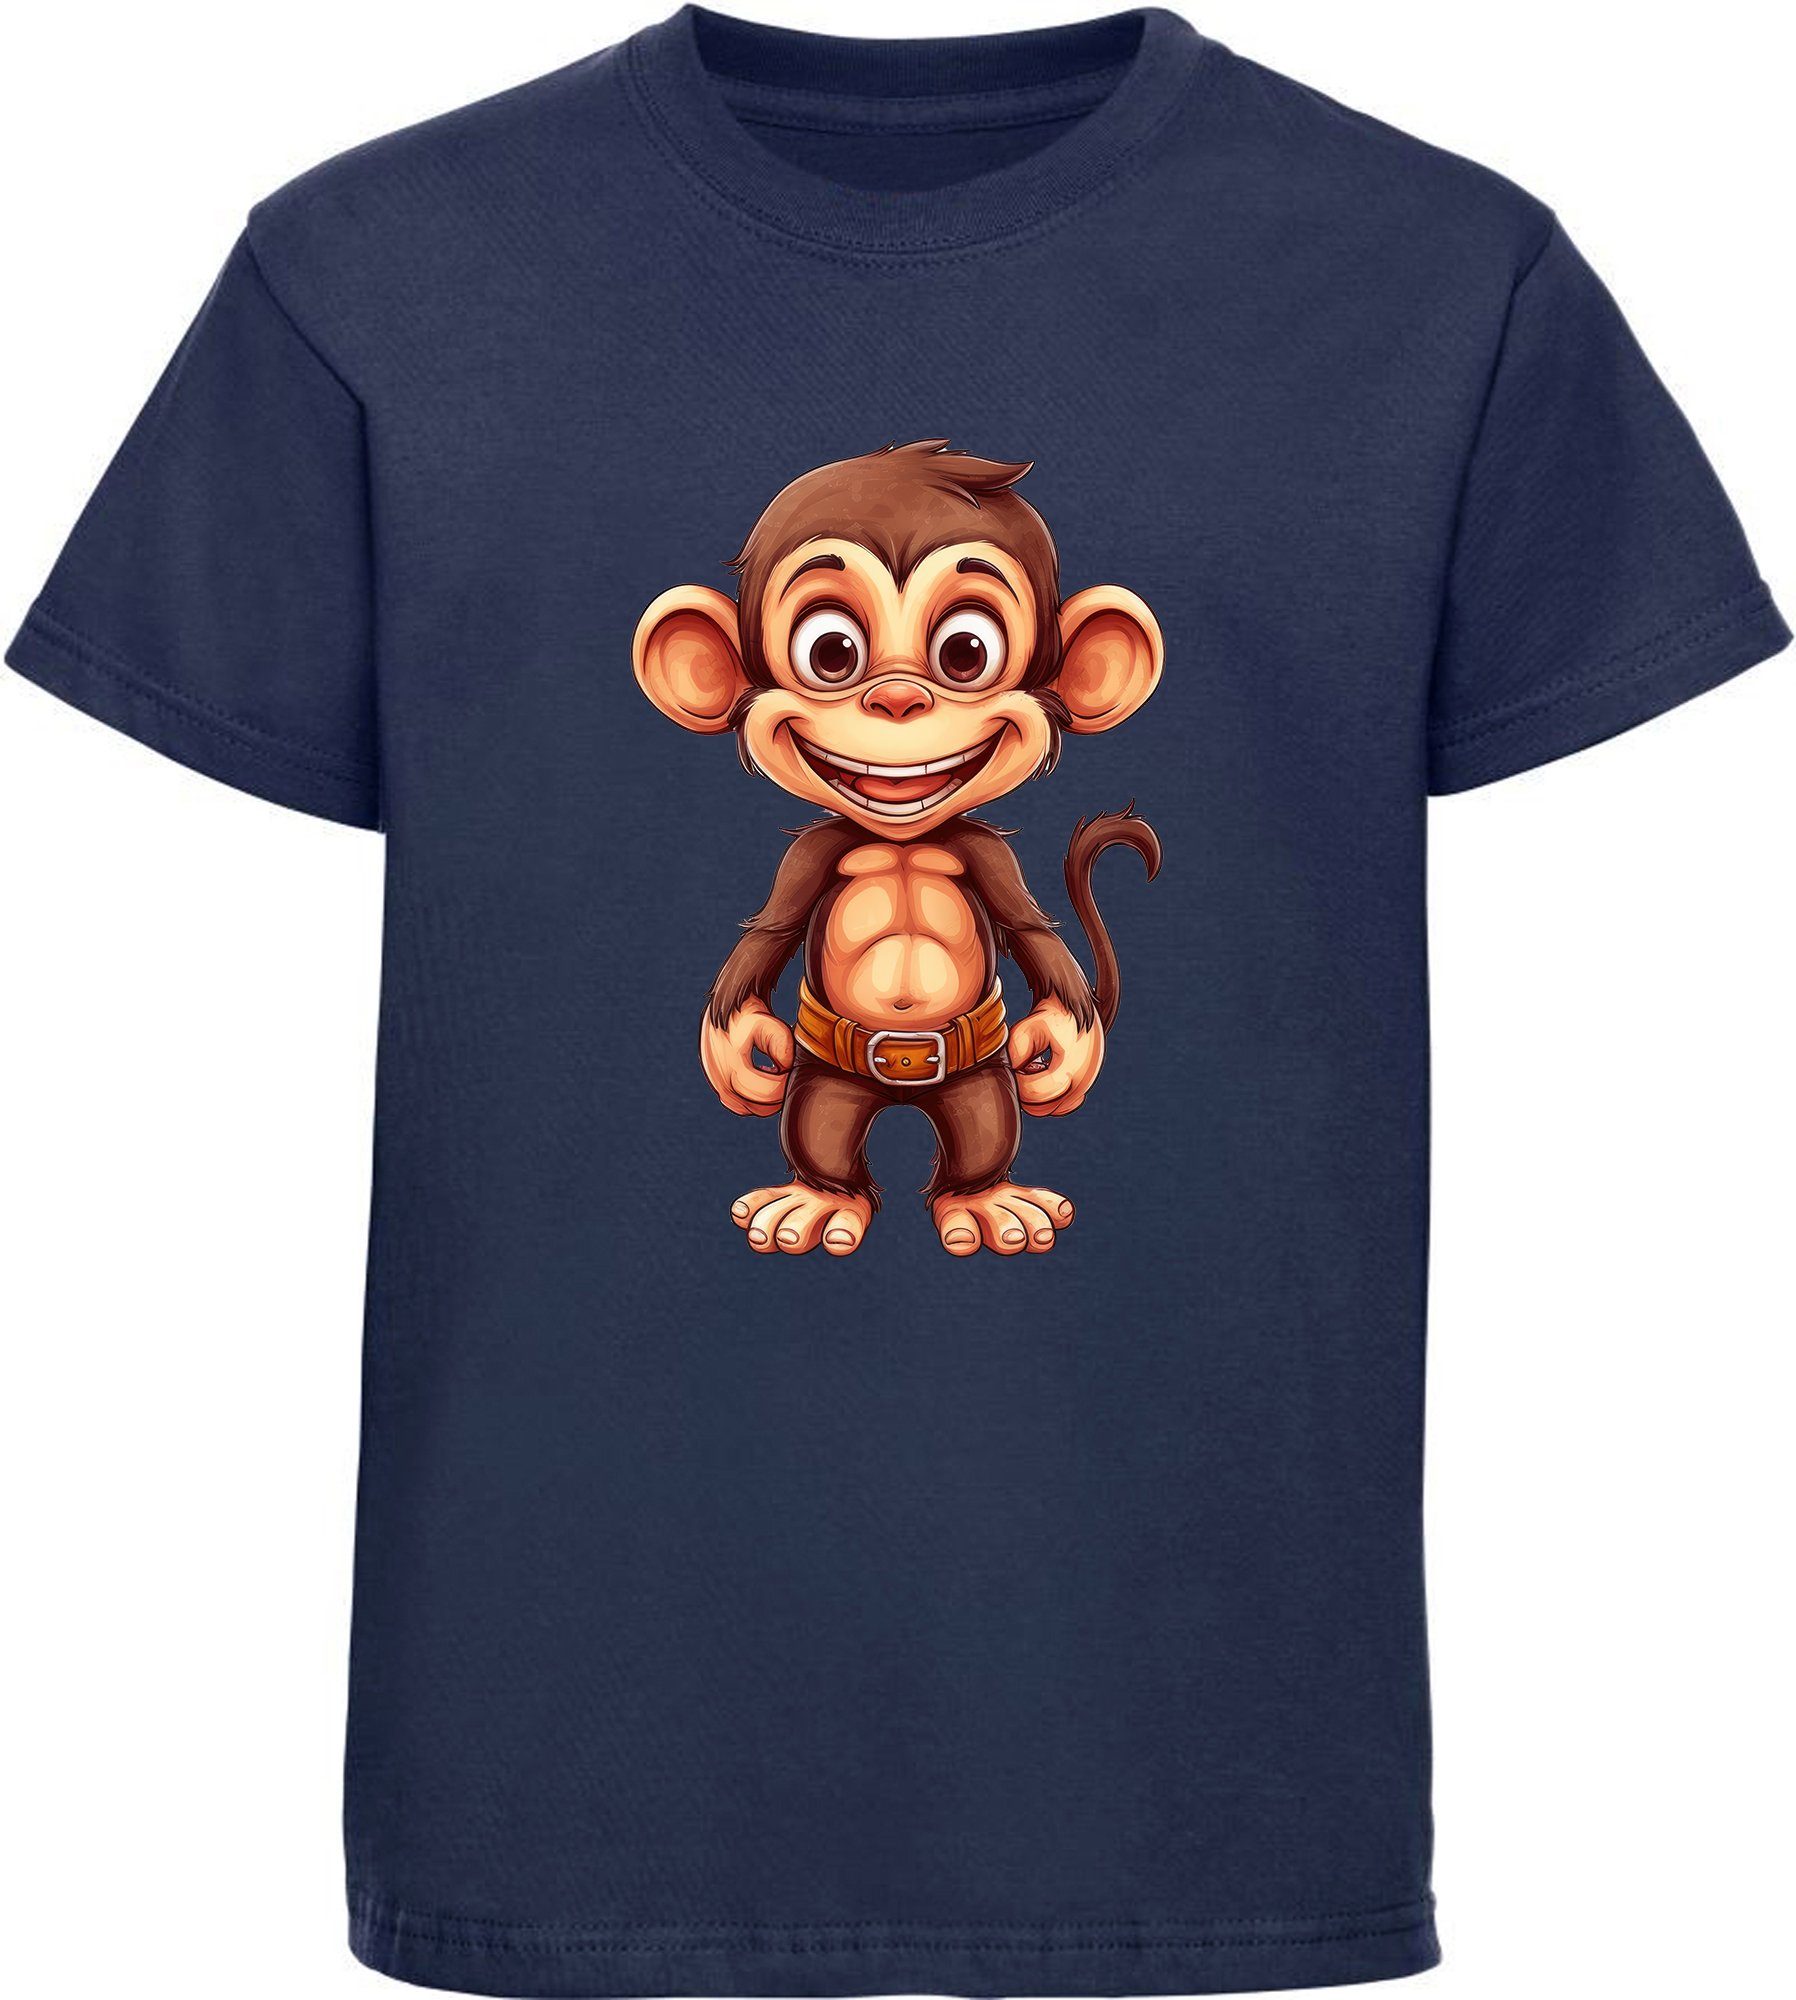 MyDesign24 T-Shirt Kinder mit Shirt i276 blau Baumwollshirt Affe Schimpanse Aufdruck, navy Print Baby bedruckt - Wildtier